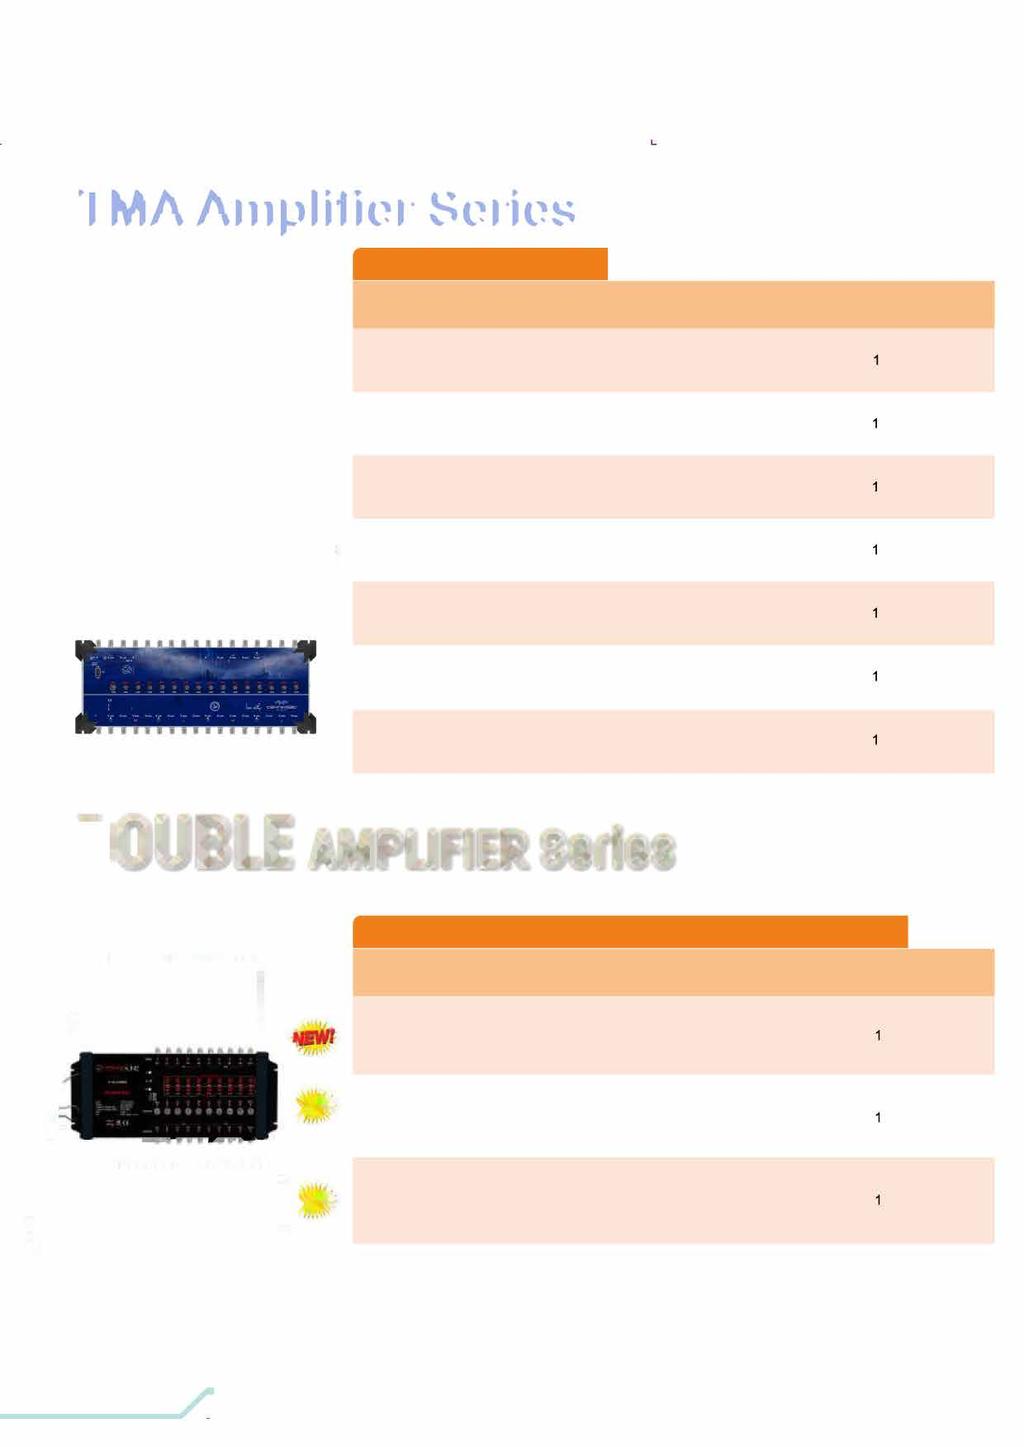 TMA Amplifier Series Group Amplifier TMA5X5 (4IF + RF) 16001 (1Sat + RF) Özel üretim kasa 24 db Kazançlı, Rf pasif, 4 db ekolayzer devresi her uydu için 20 db Alternatör yüksek izalasyonlu grup